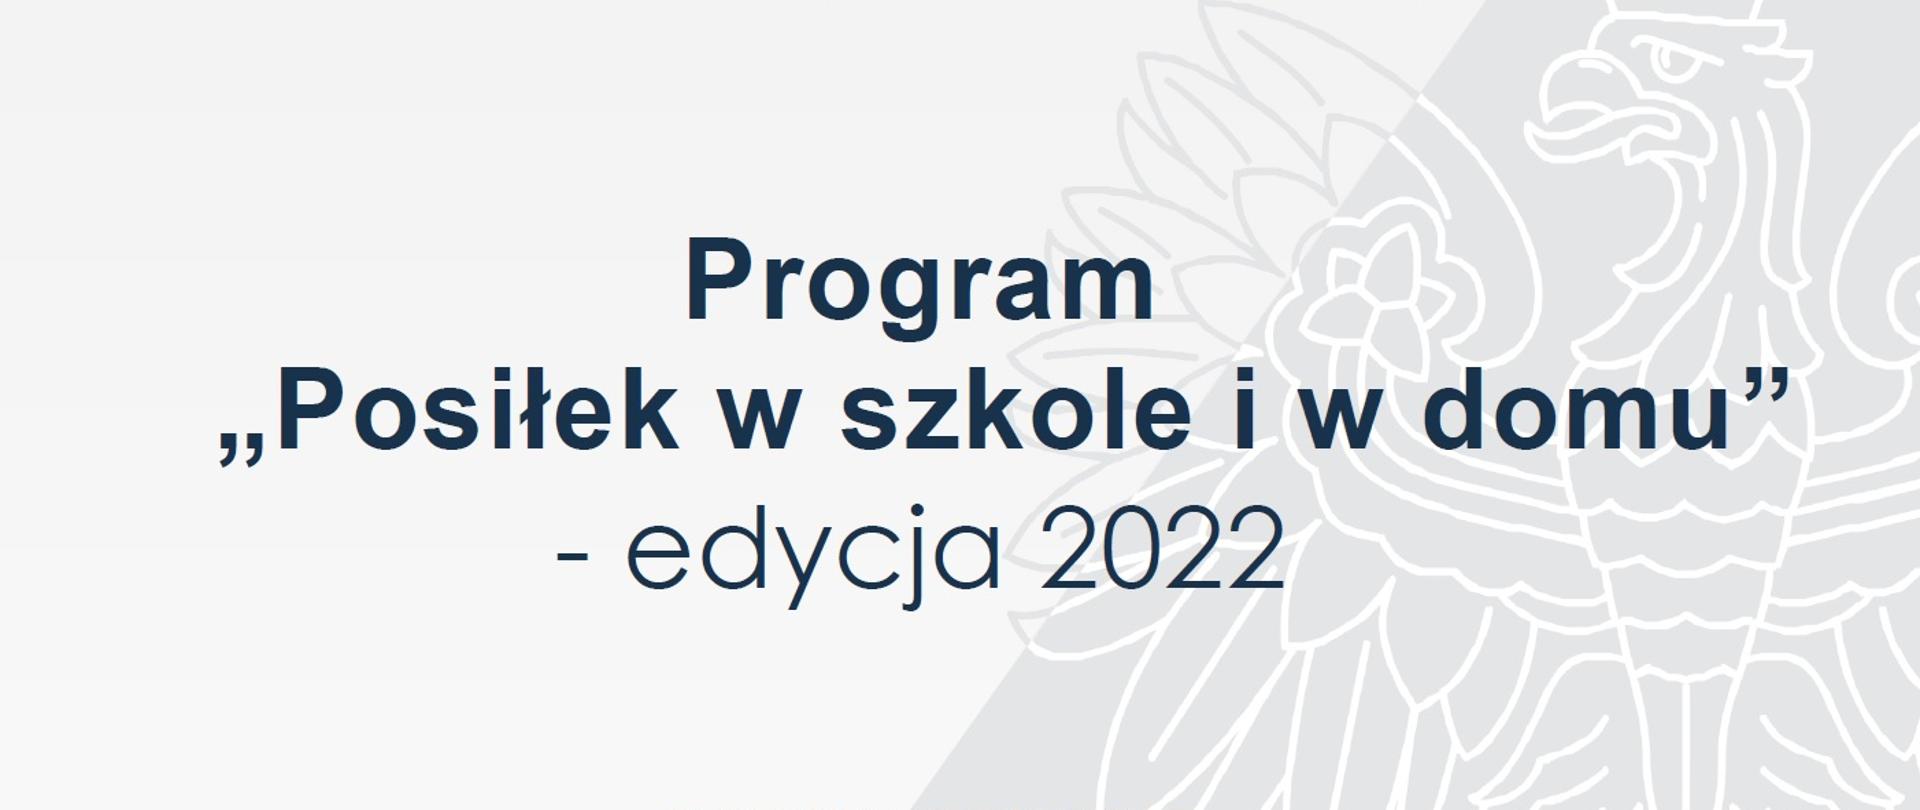 Plakat programu posiłek w szkole i w domu - edycja 2022. W górnej części widać flagę Polski i godło.